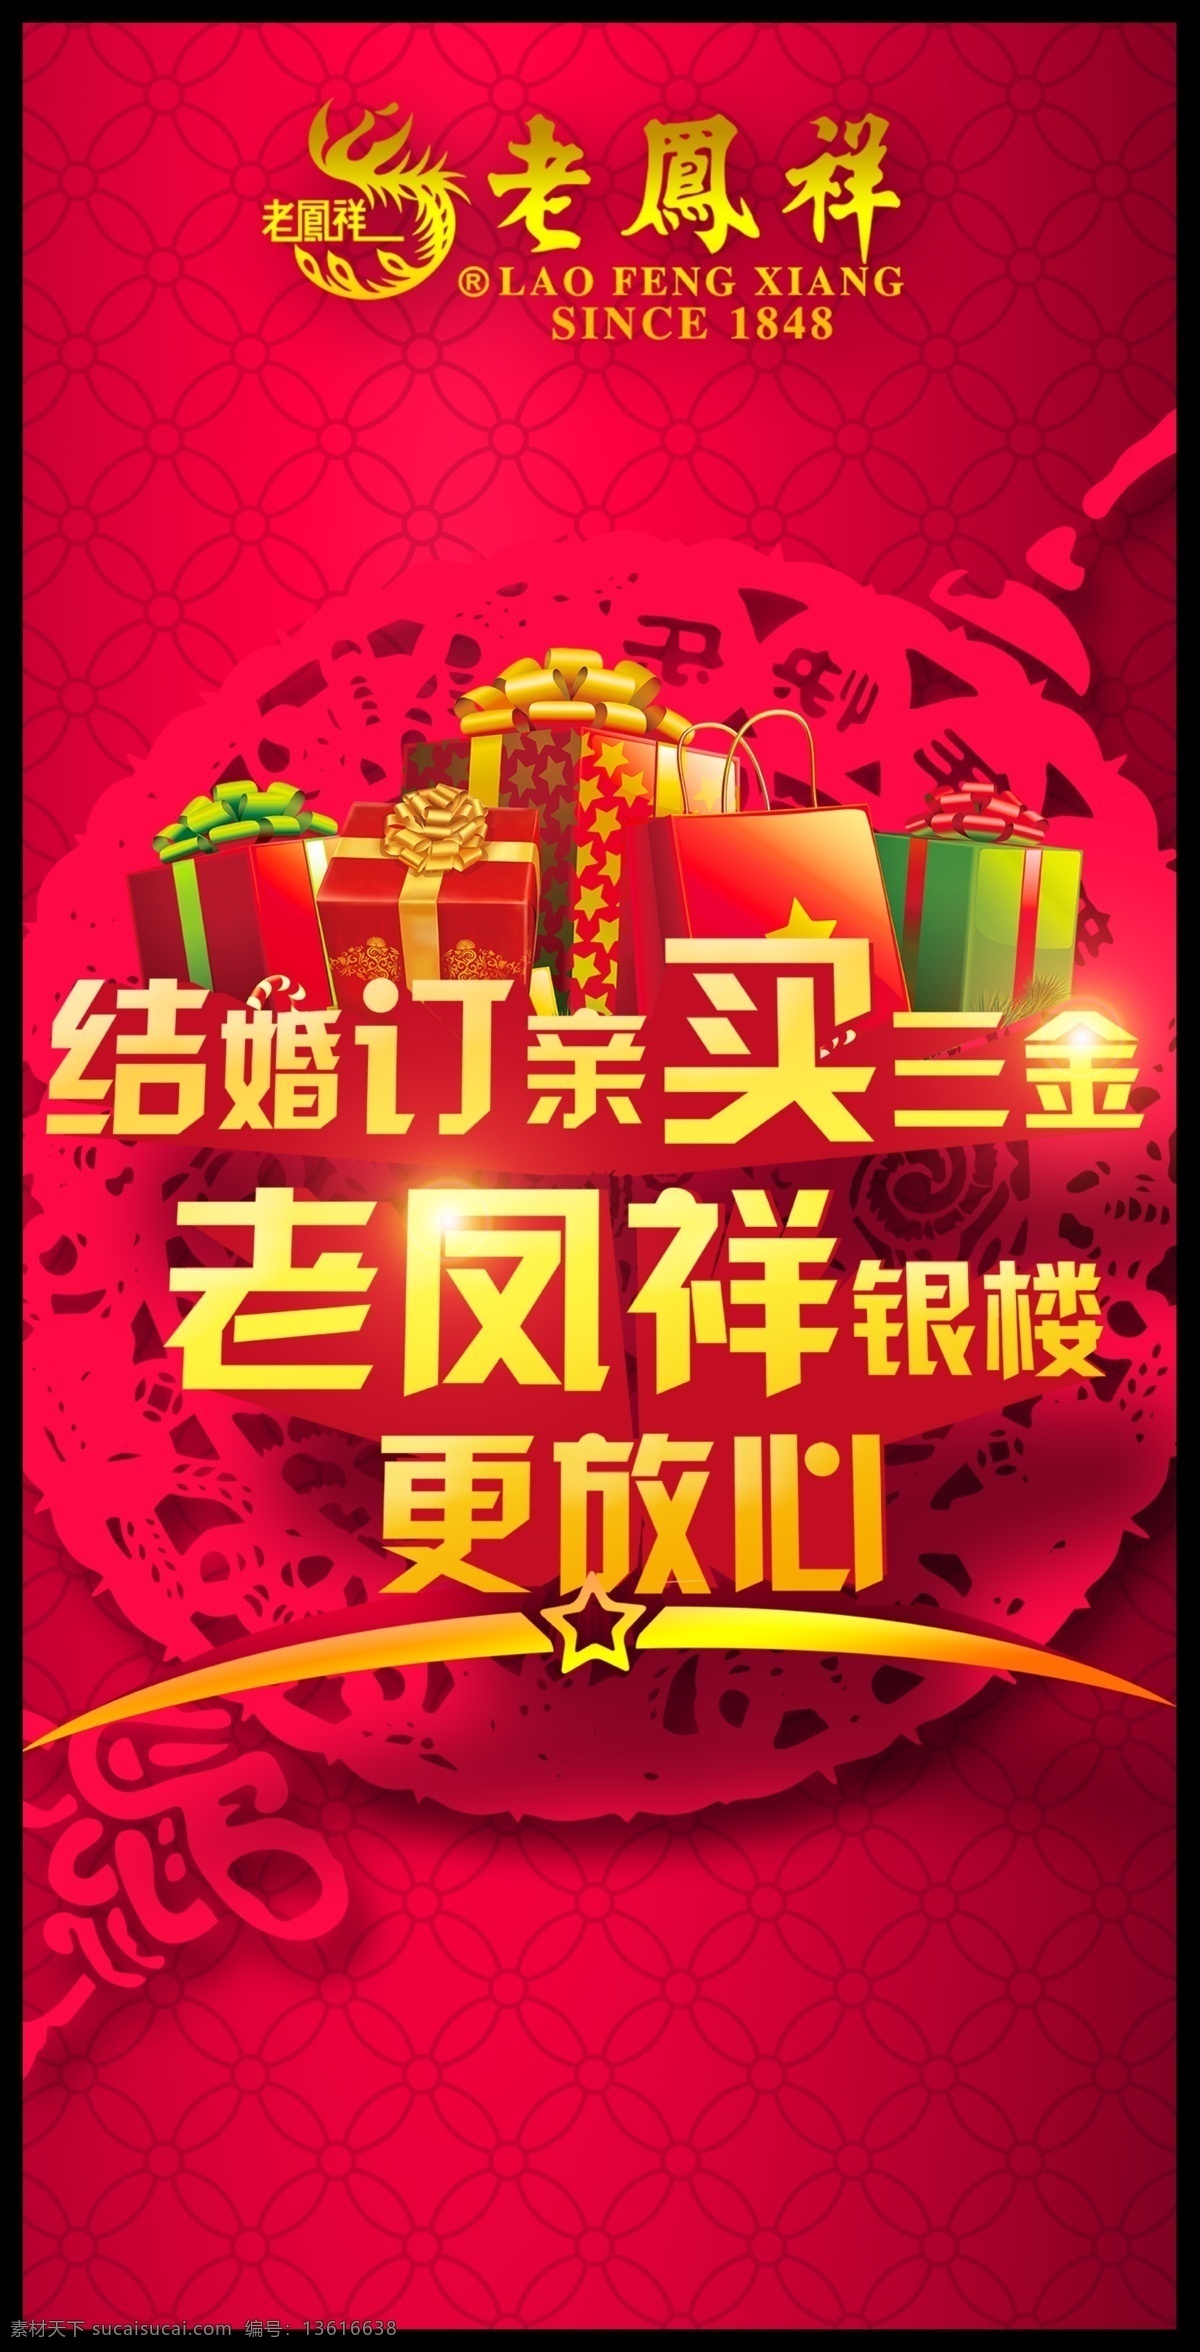 老凤祥 宣传海报 珠宝 特惠 珠宝节 黄金珠宝 室内广告设计